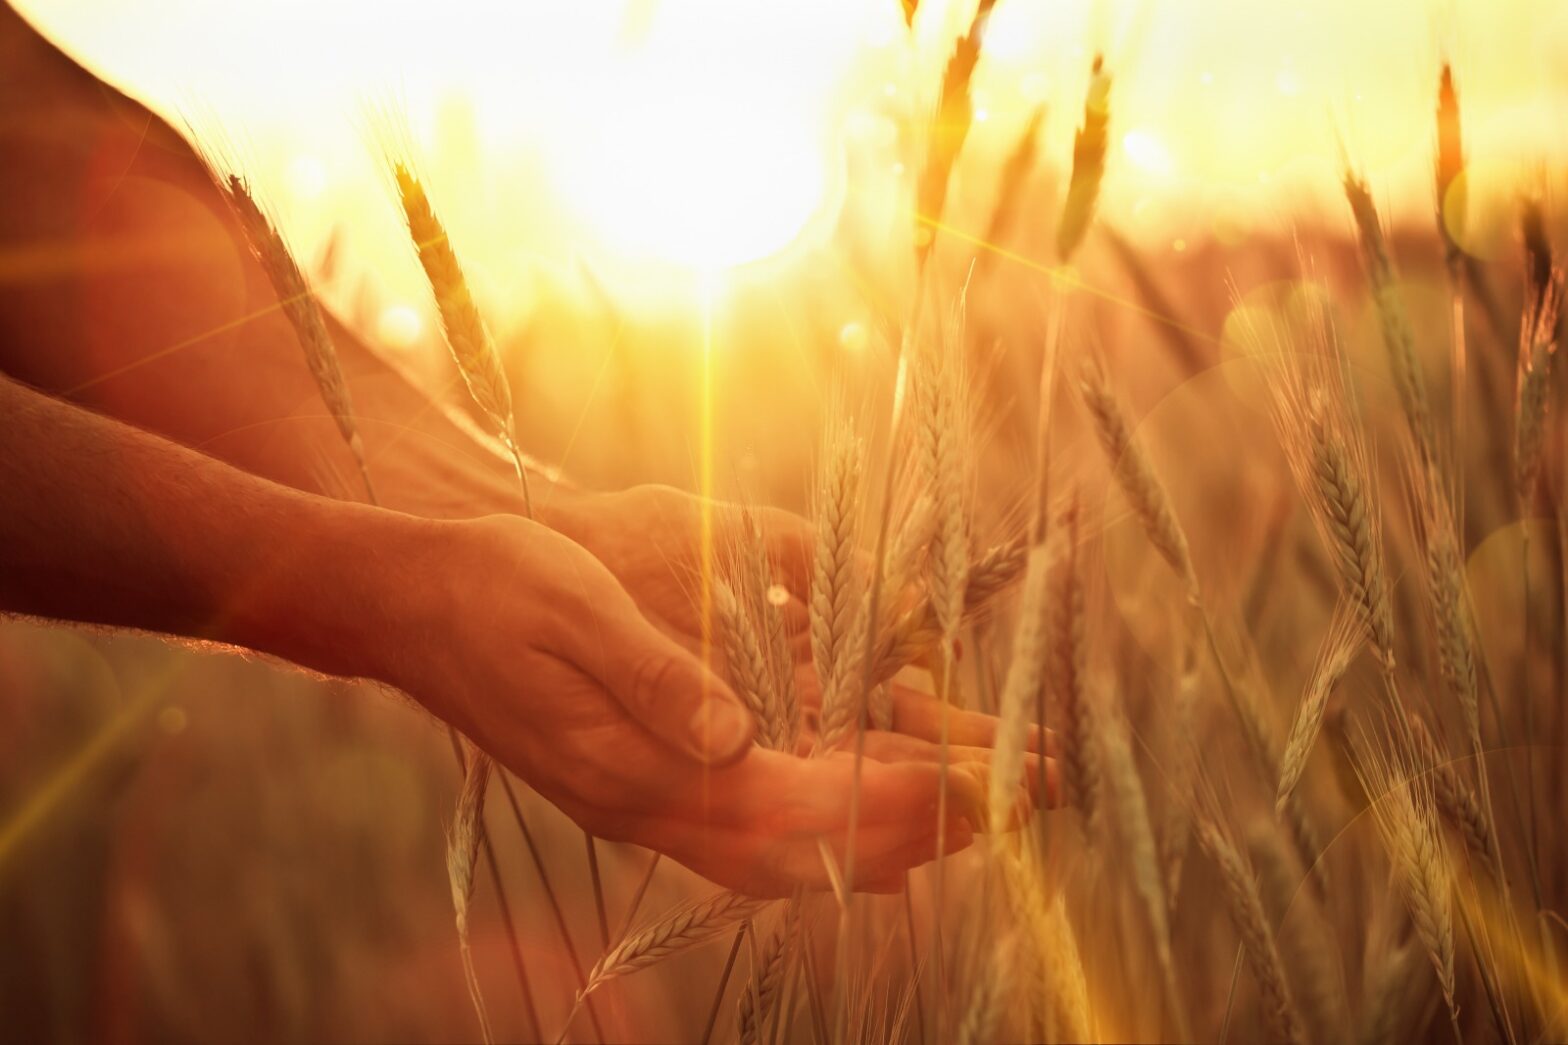 考古植物学者に聞く、人類最古の栽培植物「麦」の歴史